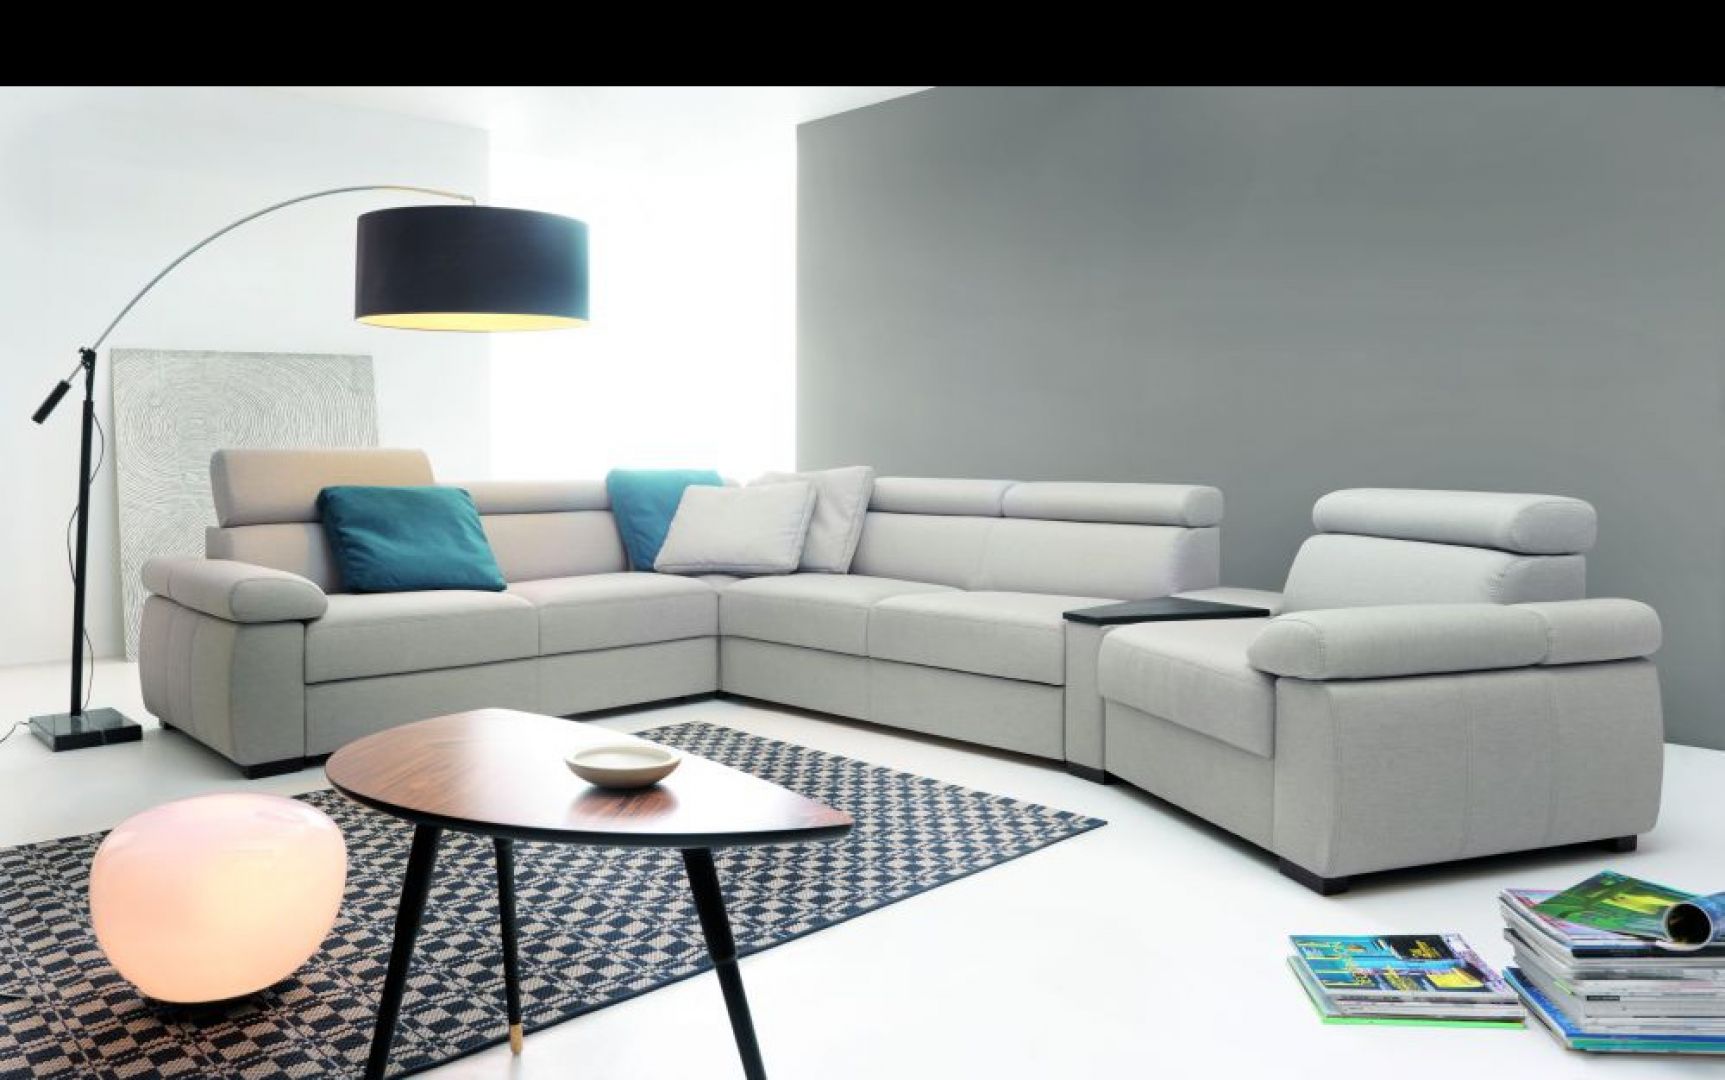 Narożnik Zoom marki Etap Sofa to mebel doskonały na większe przyjęcia. Długie siedzisko zapewni dużą ilość miejsca do siedzenia. Fot. Etap Sofa